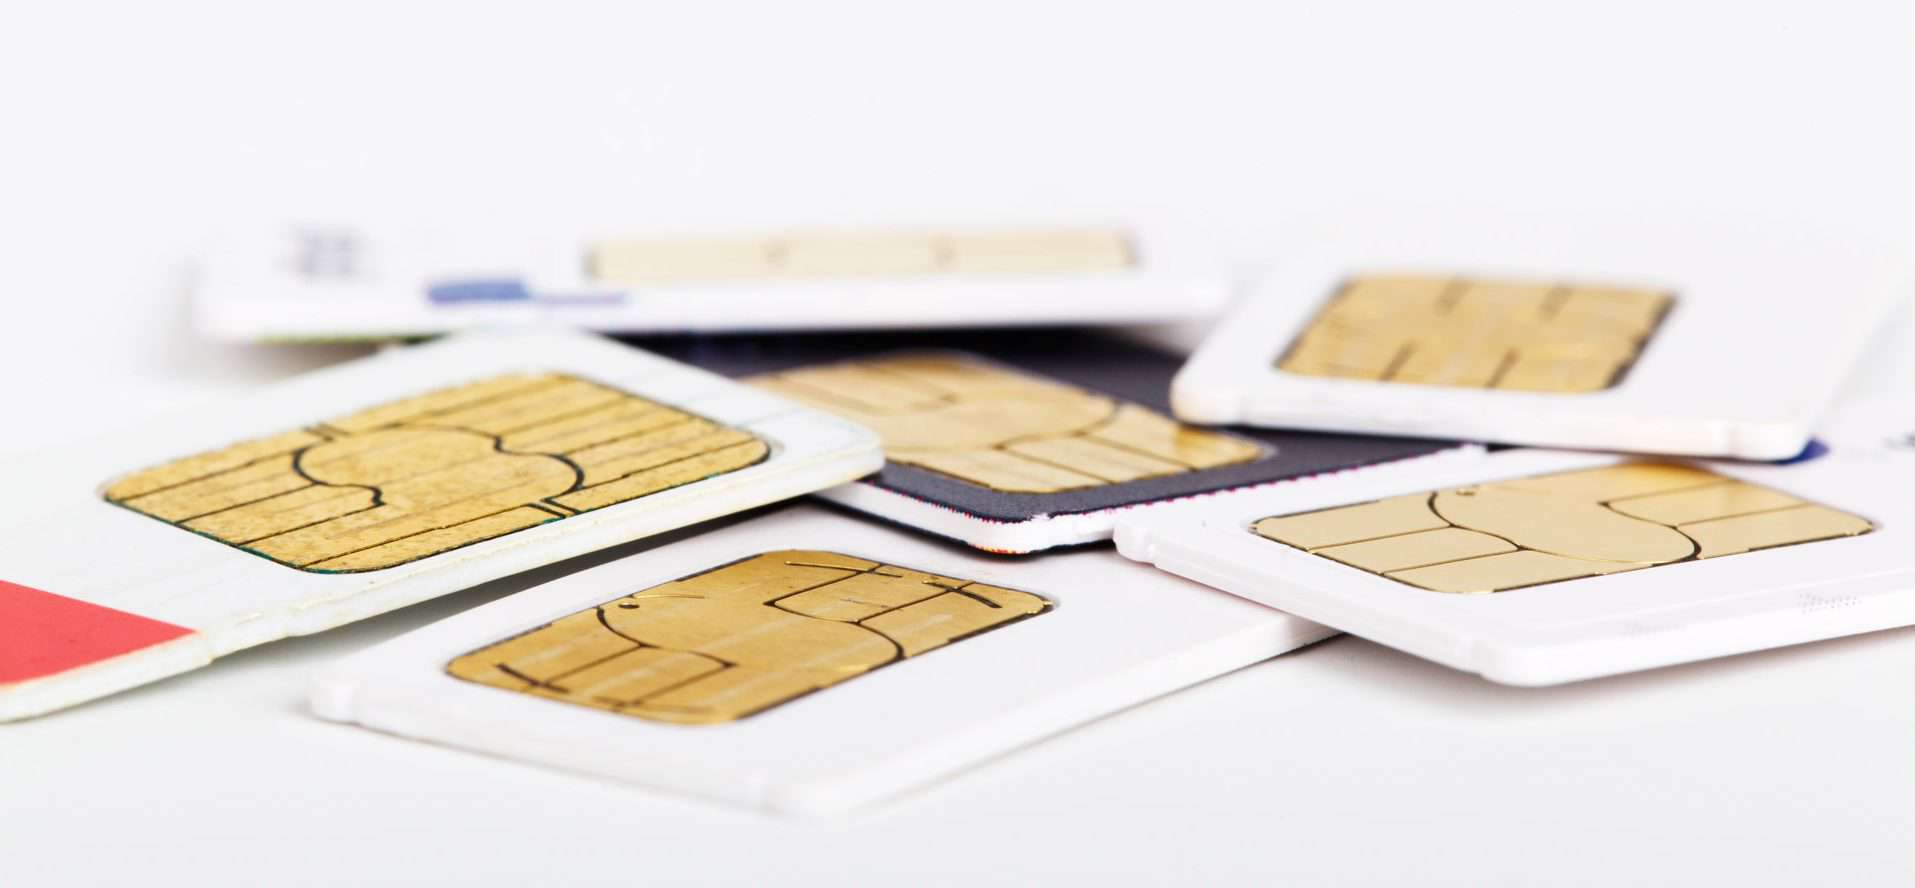 Anonym trotz Ausweispflicht: Vorregistrierte SIM-Karten schlagen durch